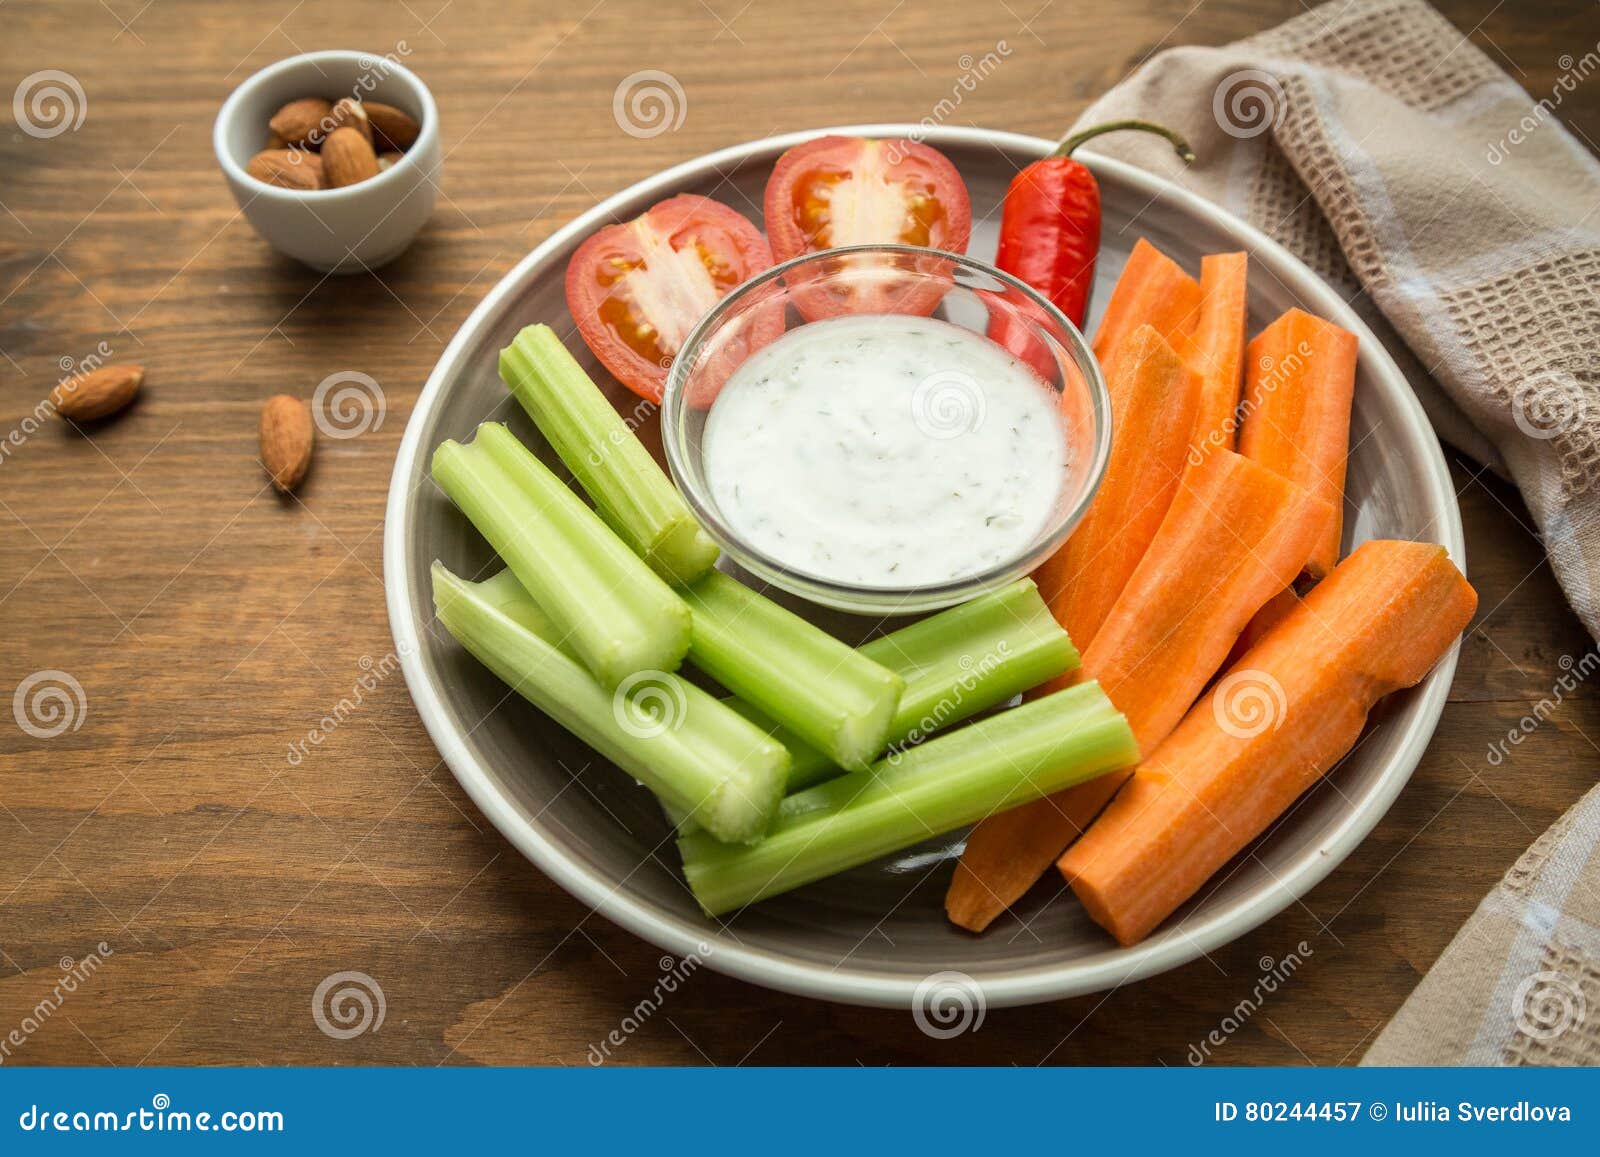 vegetarian healthy snacks, vegetable snack: carrots, celery, tom